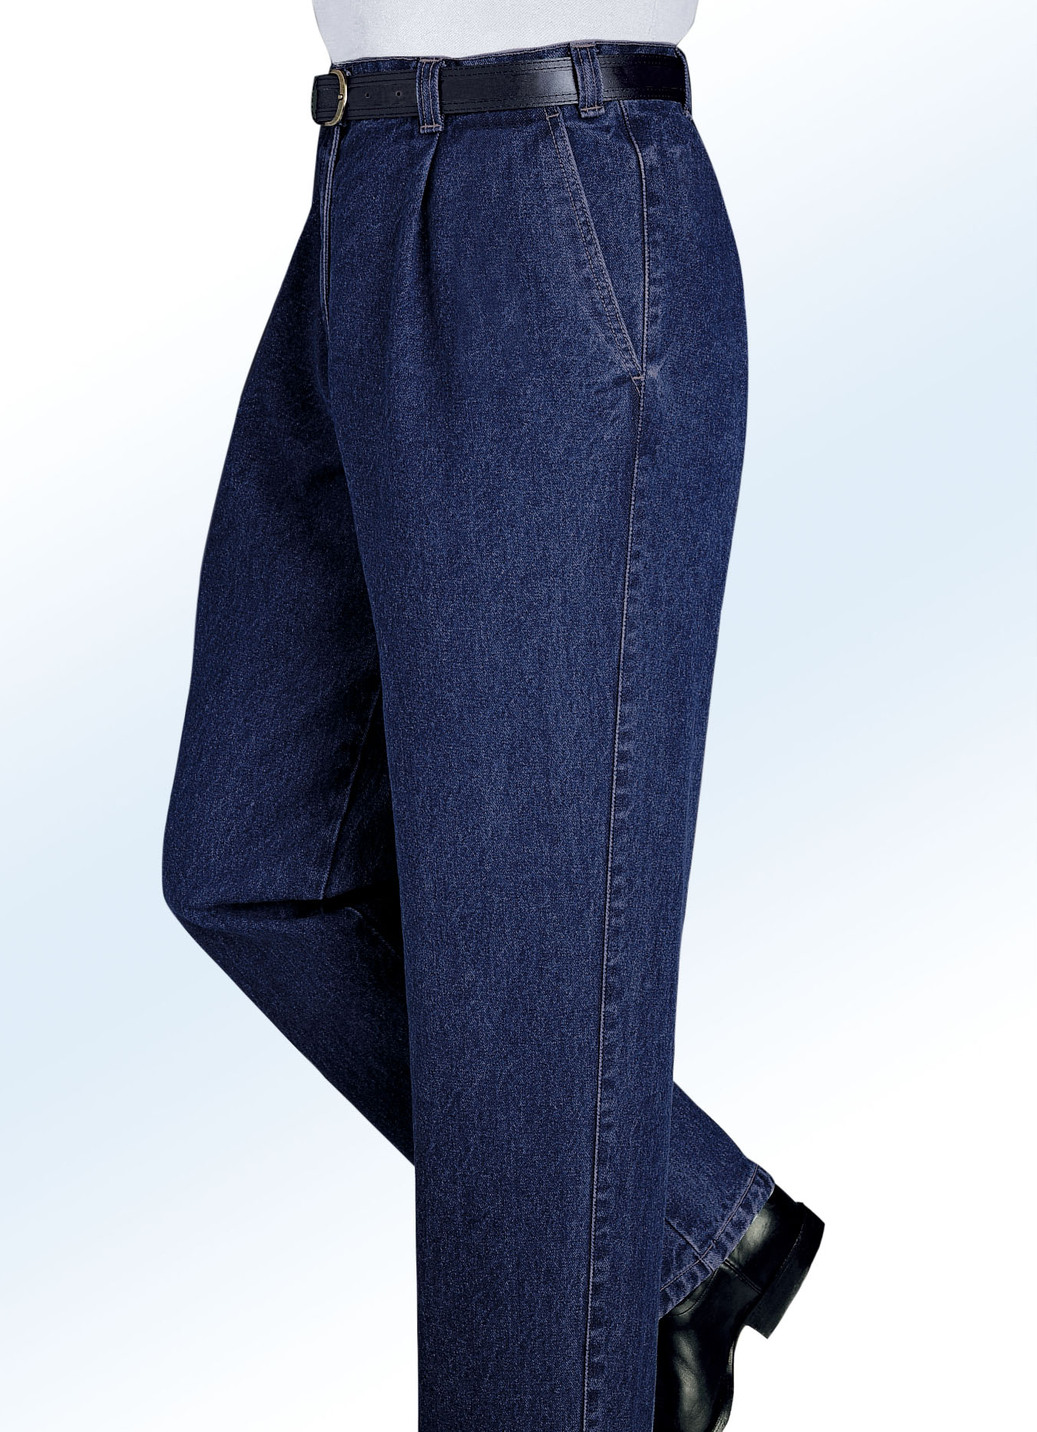 "Francesco Botti"-Jeans in 2 Qualitäten und 3 Farben, Qualität 1.Qualität, Dunkeljeans, Größe 55 von FRANCESCO BOTTI